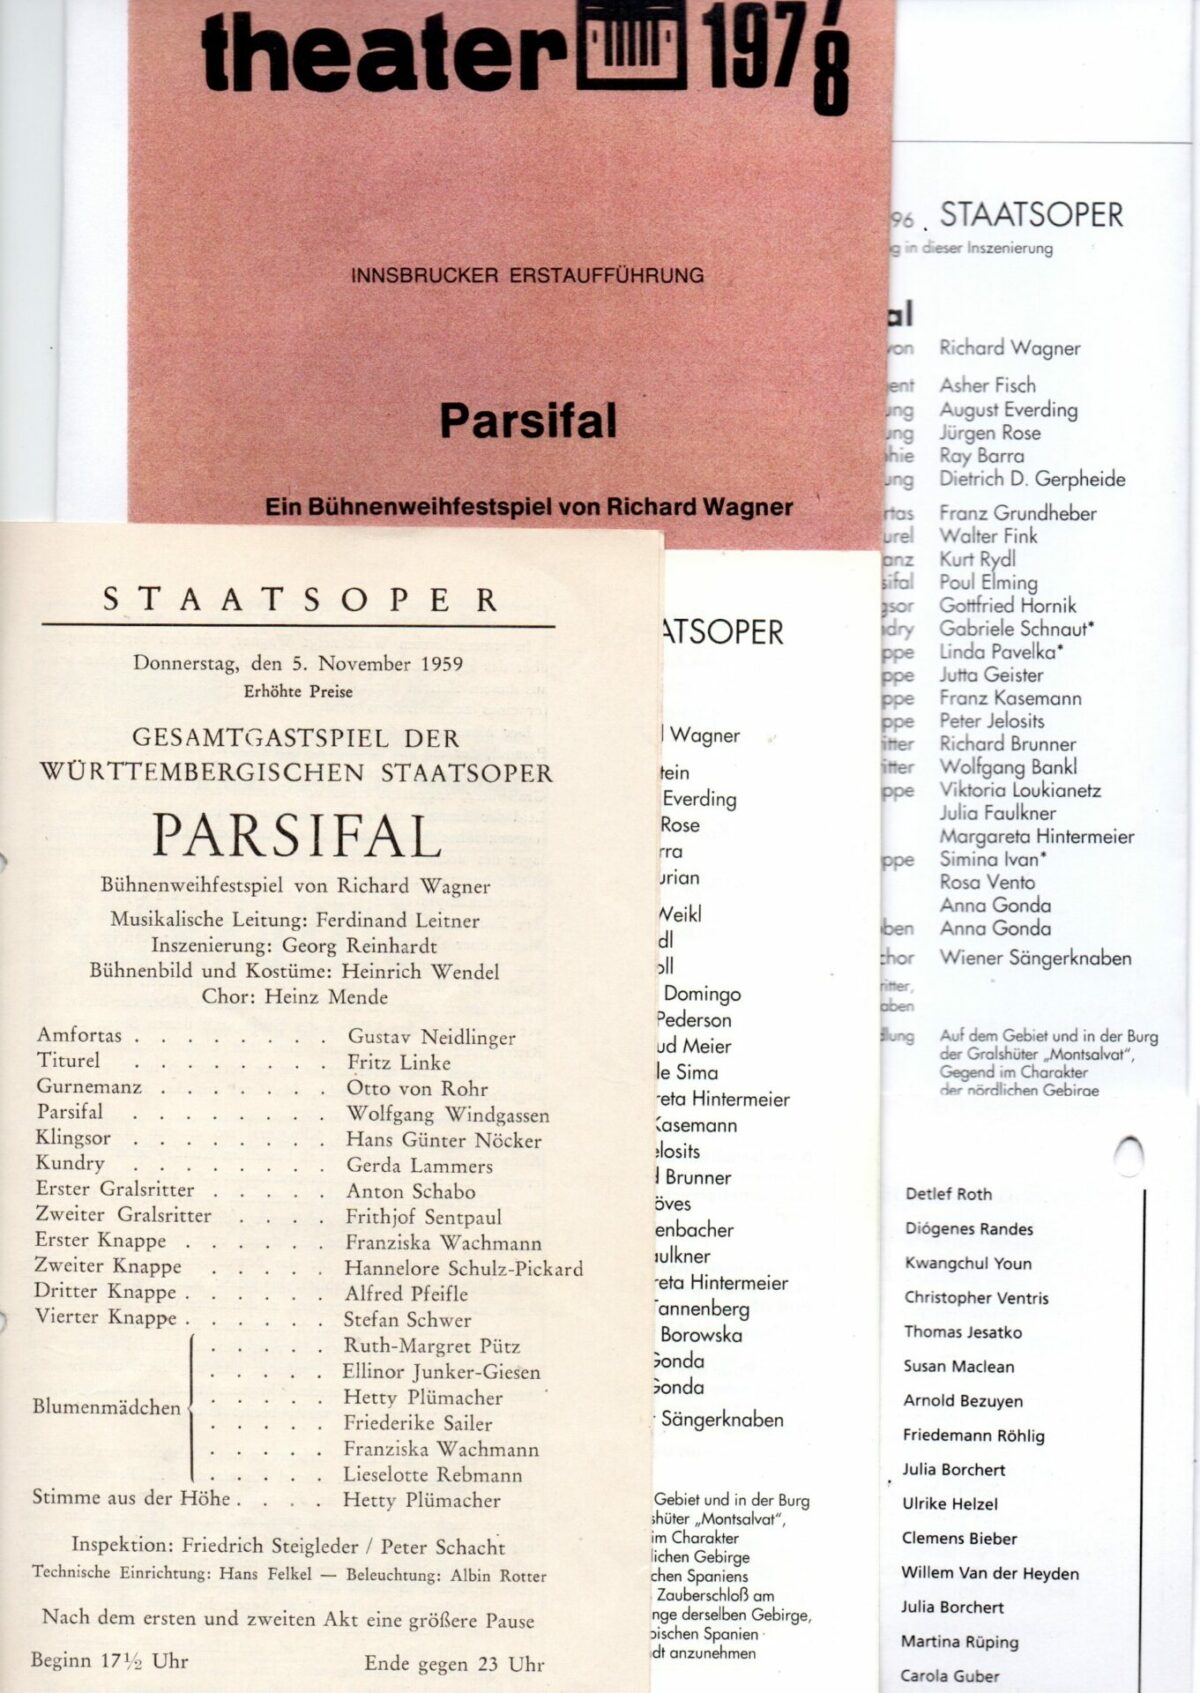 Schweitzers Klassikwelt 105: Arien und Opern oftmals gehört und wie nur einmal erlebt  klassik-begeistert.de, 9. Januar 2024